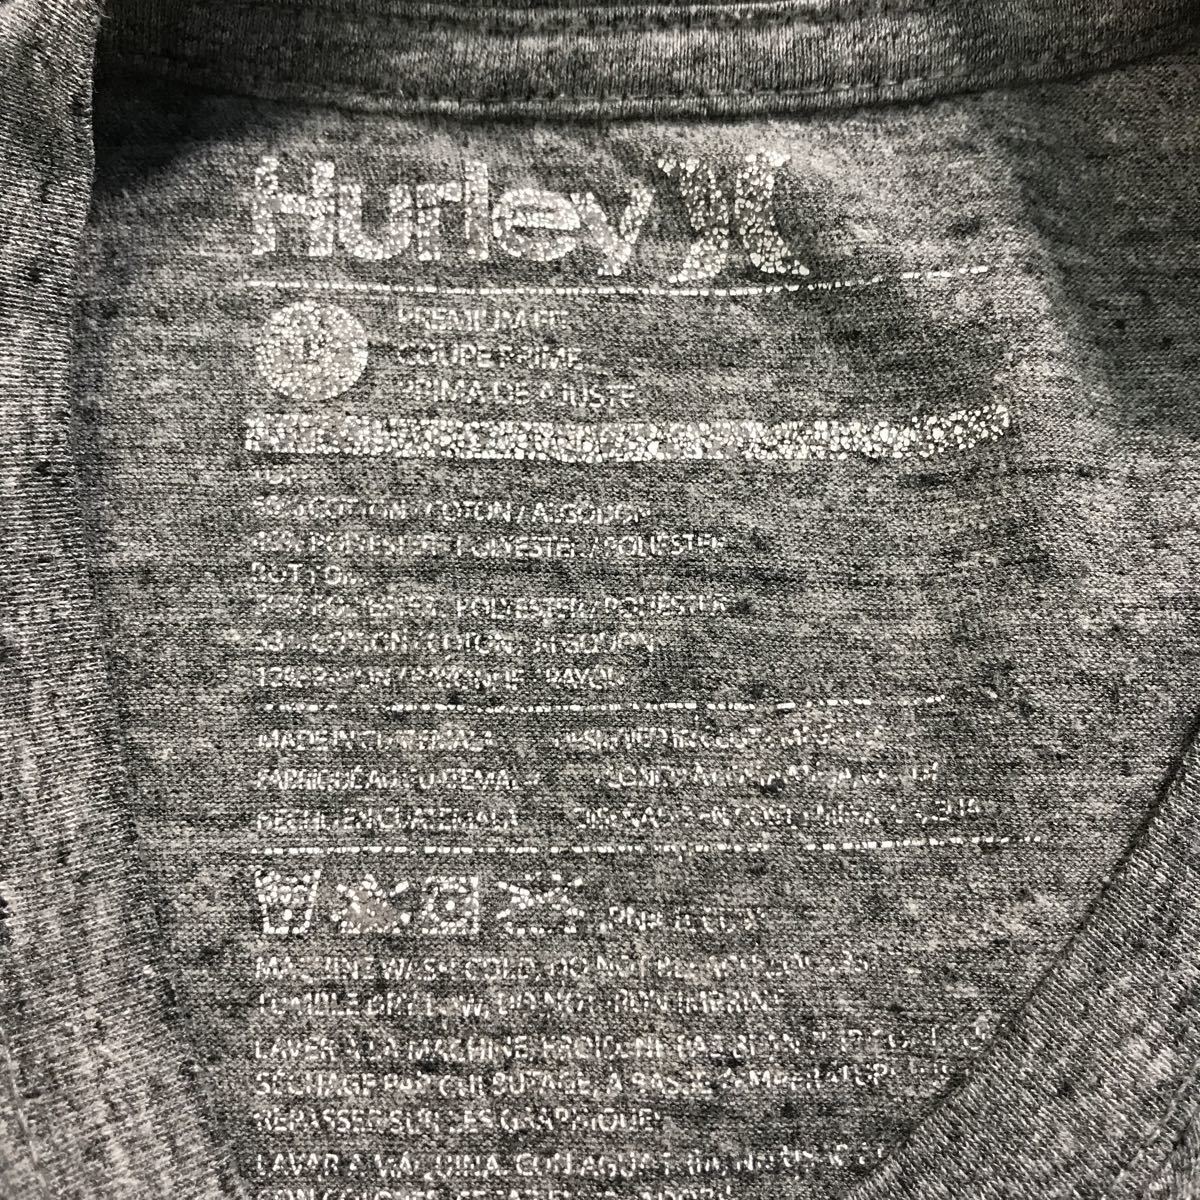 Hurley короткий рукав одноцветный футболка L светло-серый красный темно-серый Harley переключатель б/у одежда . America скупка a507-6353